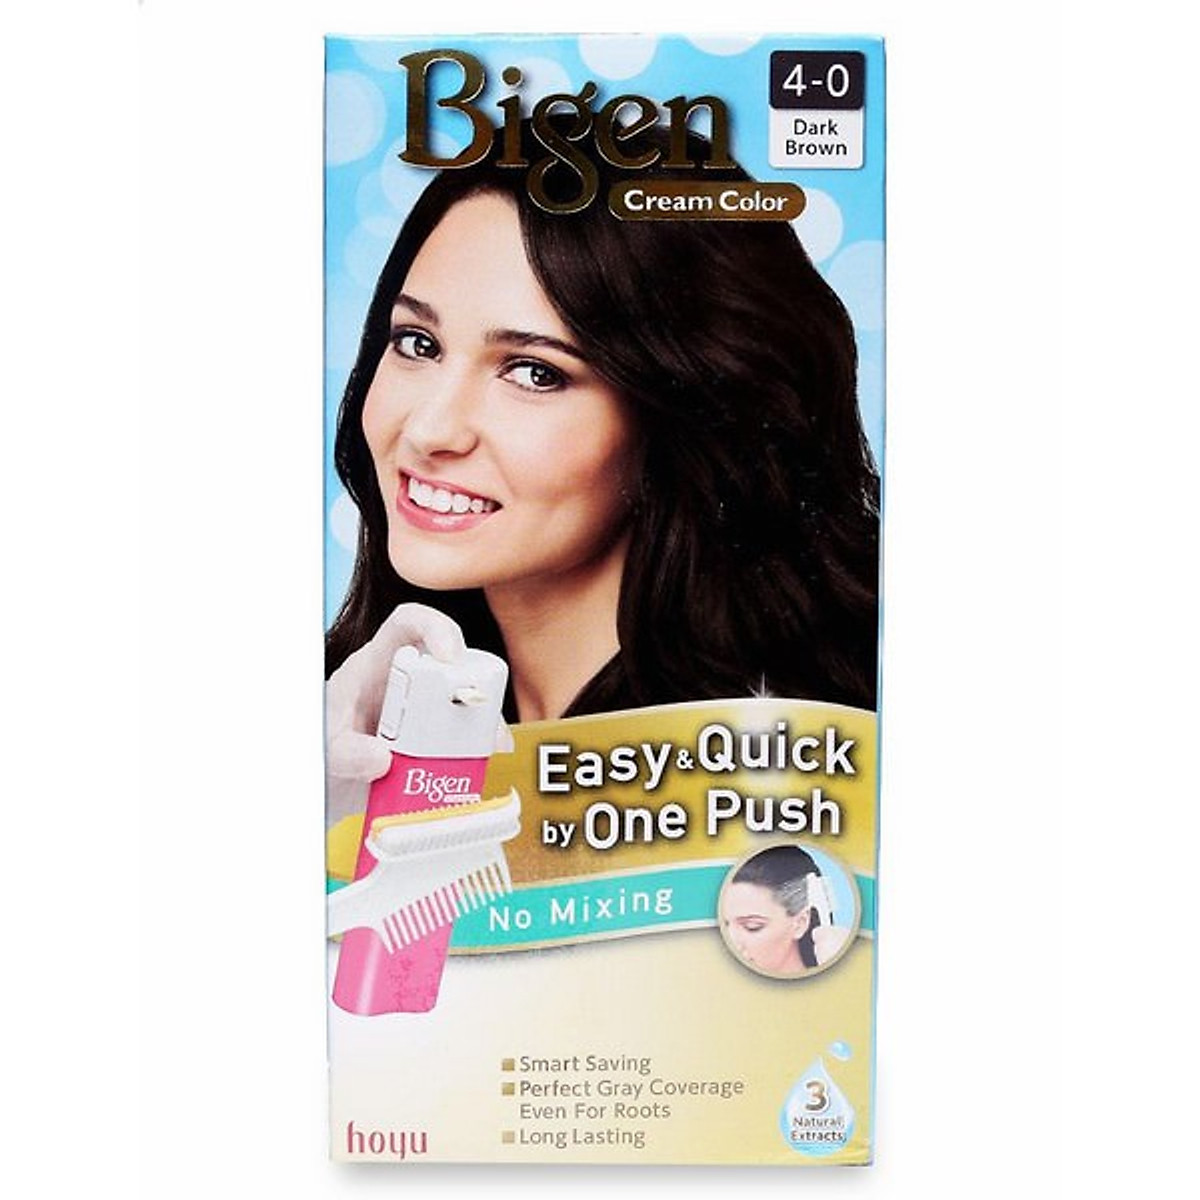 Bigen Cream Color là loại thuốc nhuộm tóc hiện đại, giúp tóc bạn trở nên bóng mượt với màu sắc tươi sáng. Không chỉ dễ sử dụng, sản phẩm còn chứa các dưỡng chất chăm sóc tóc giúp tóc bạn luôn khỏe và đẹp. Hãy cùng xem hình ảnh về Bigen Cream Color để hiểu rõ hơn về sản phẩm này.